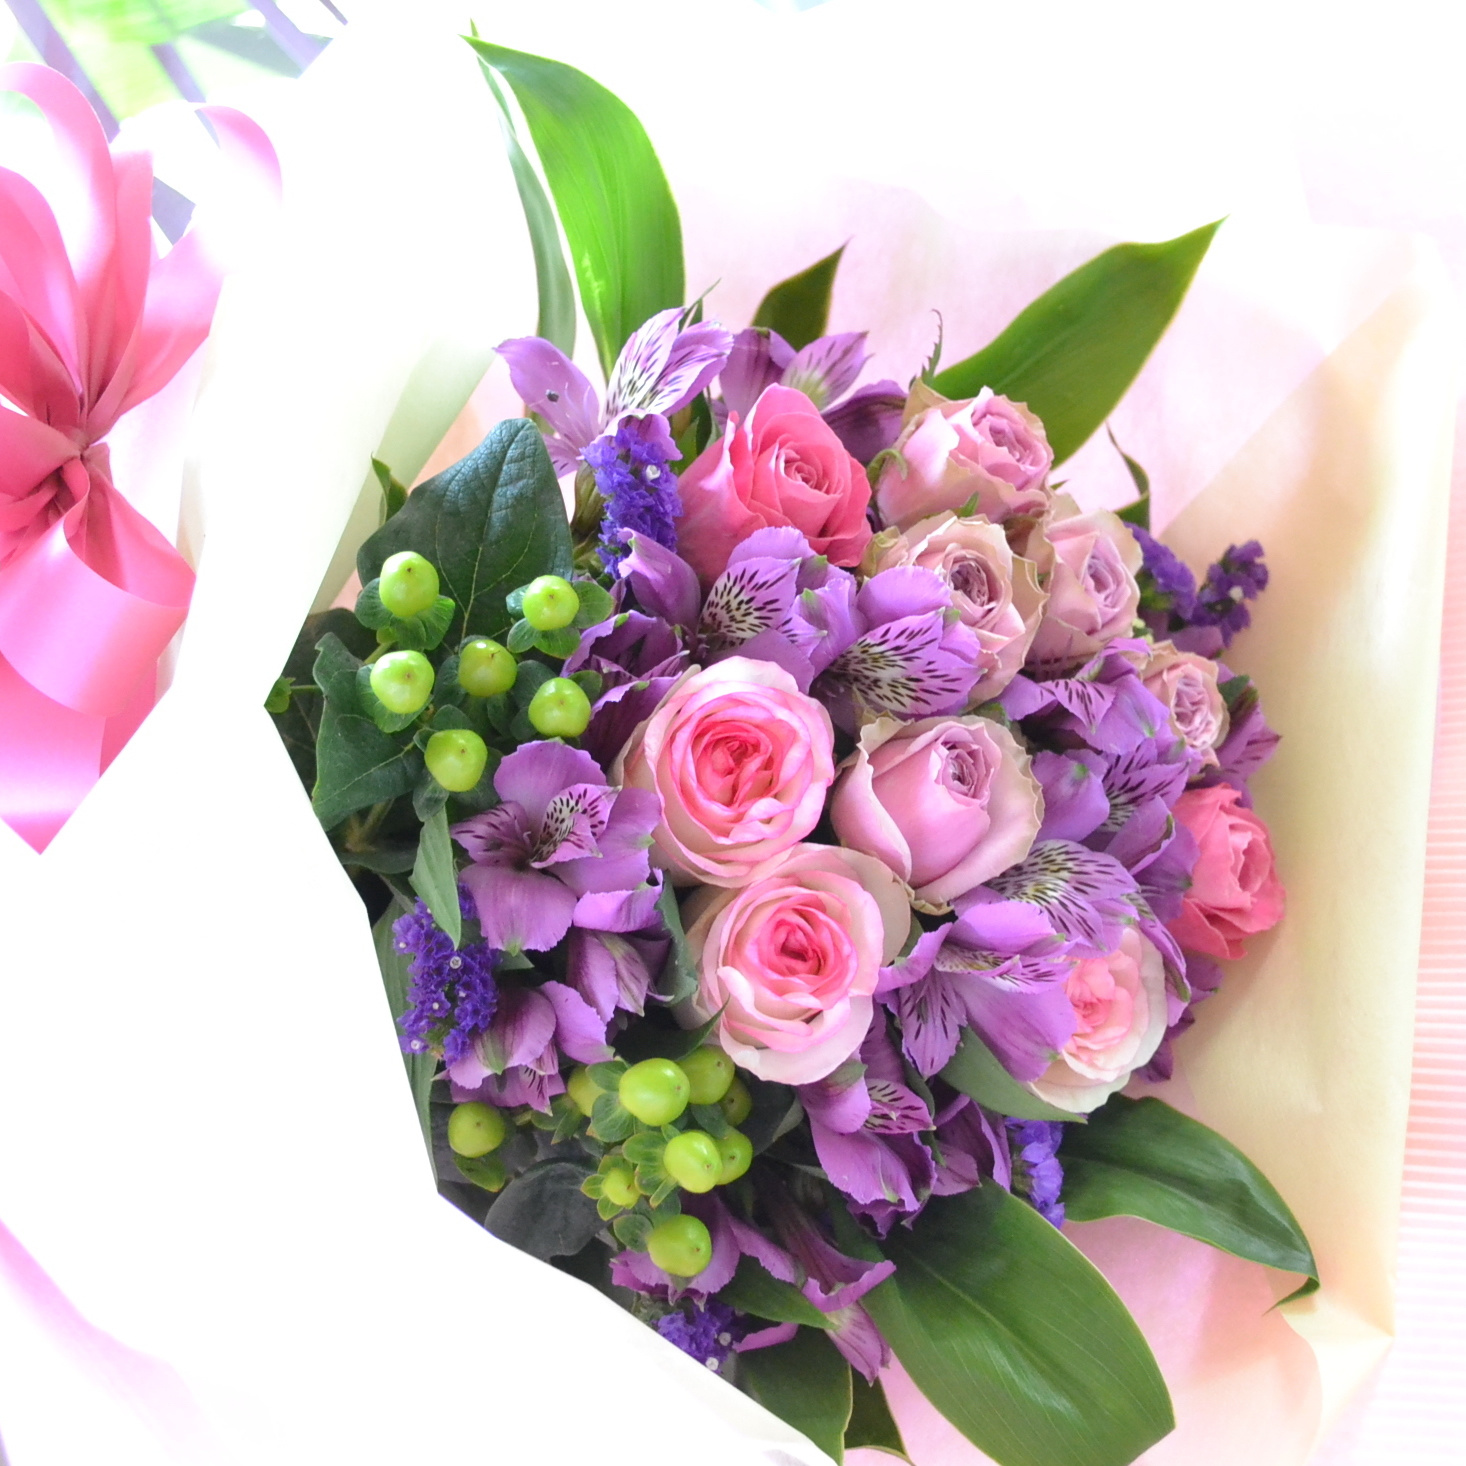 ドルチェビータと紫トルコのお花束